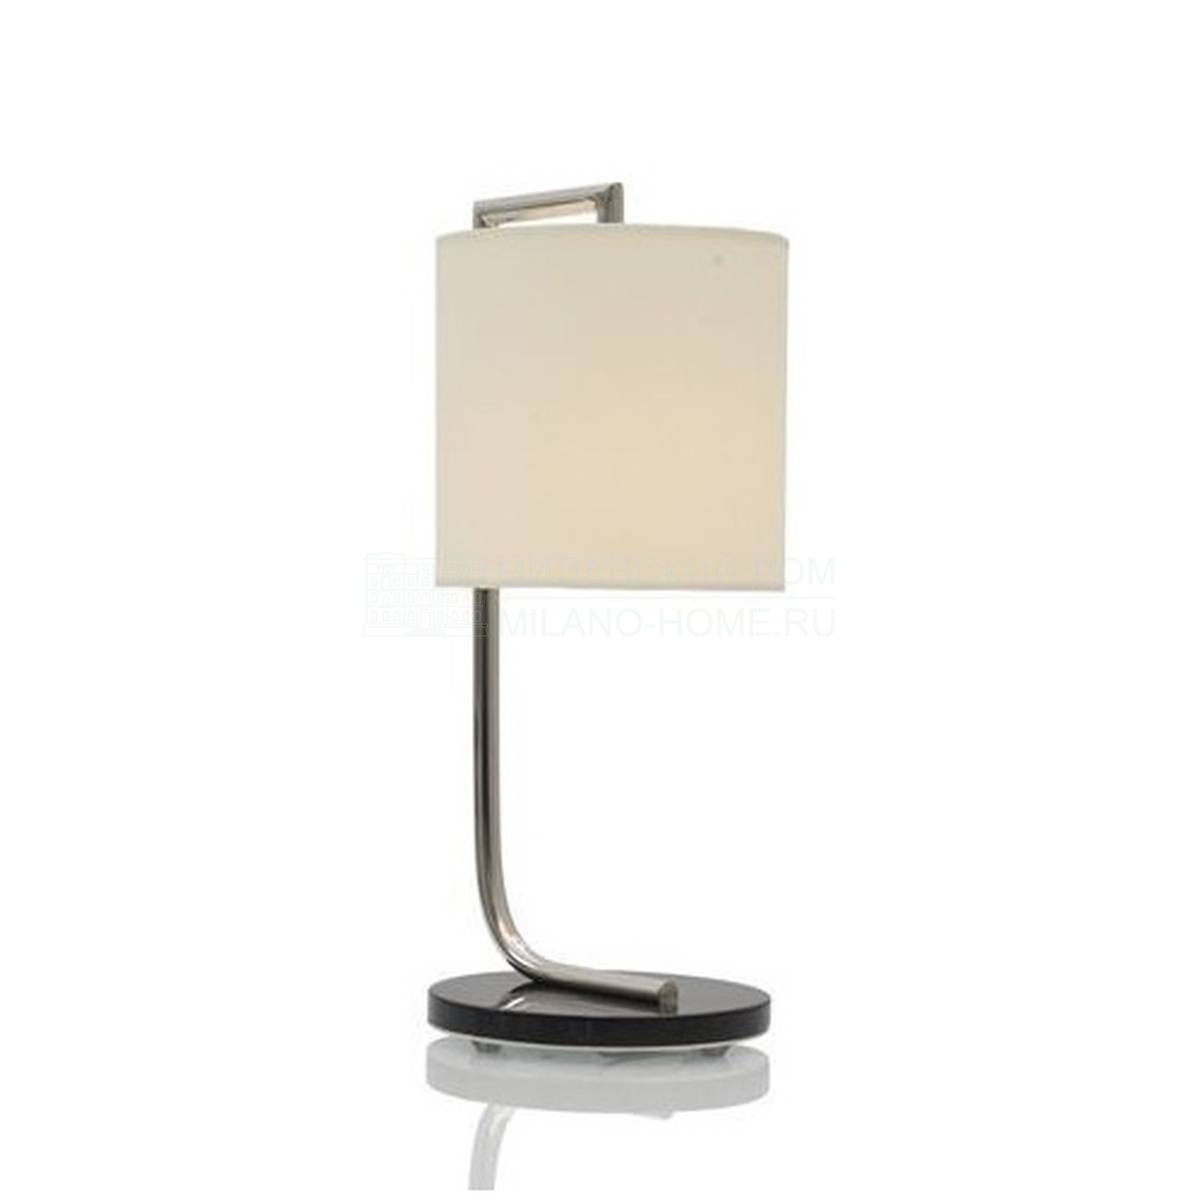 Настольная лампа Studio/table-lamp из Бельгии фабрики JNL 